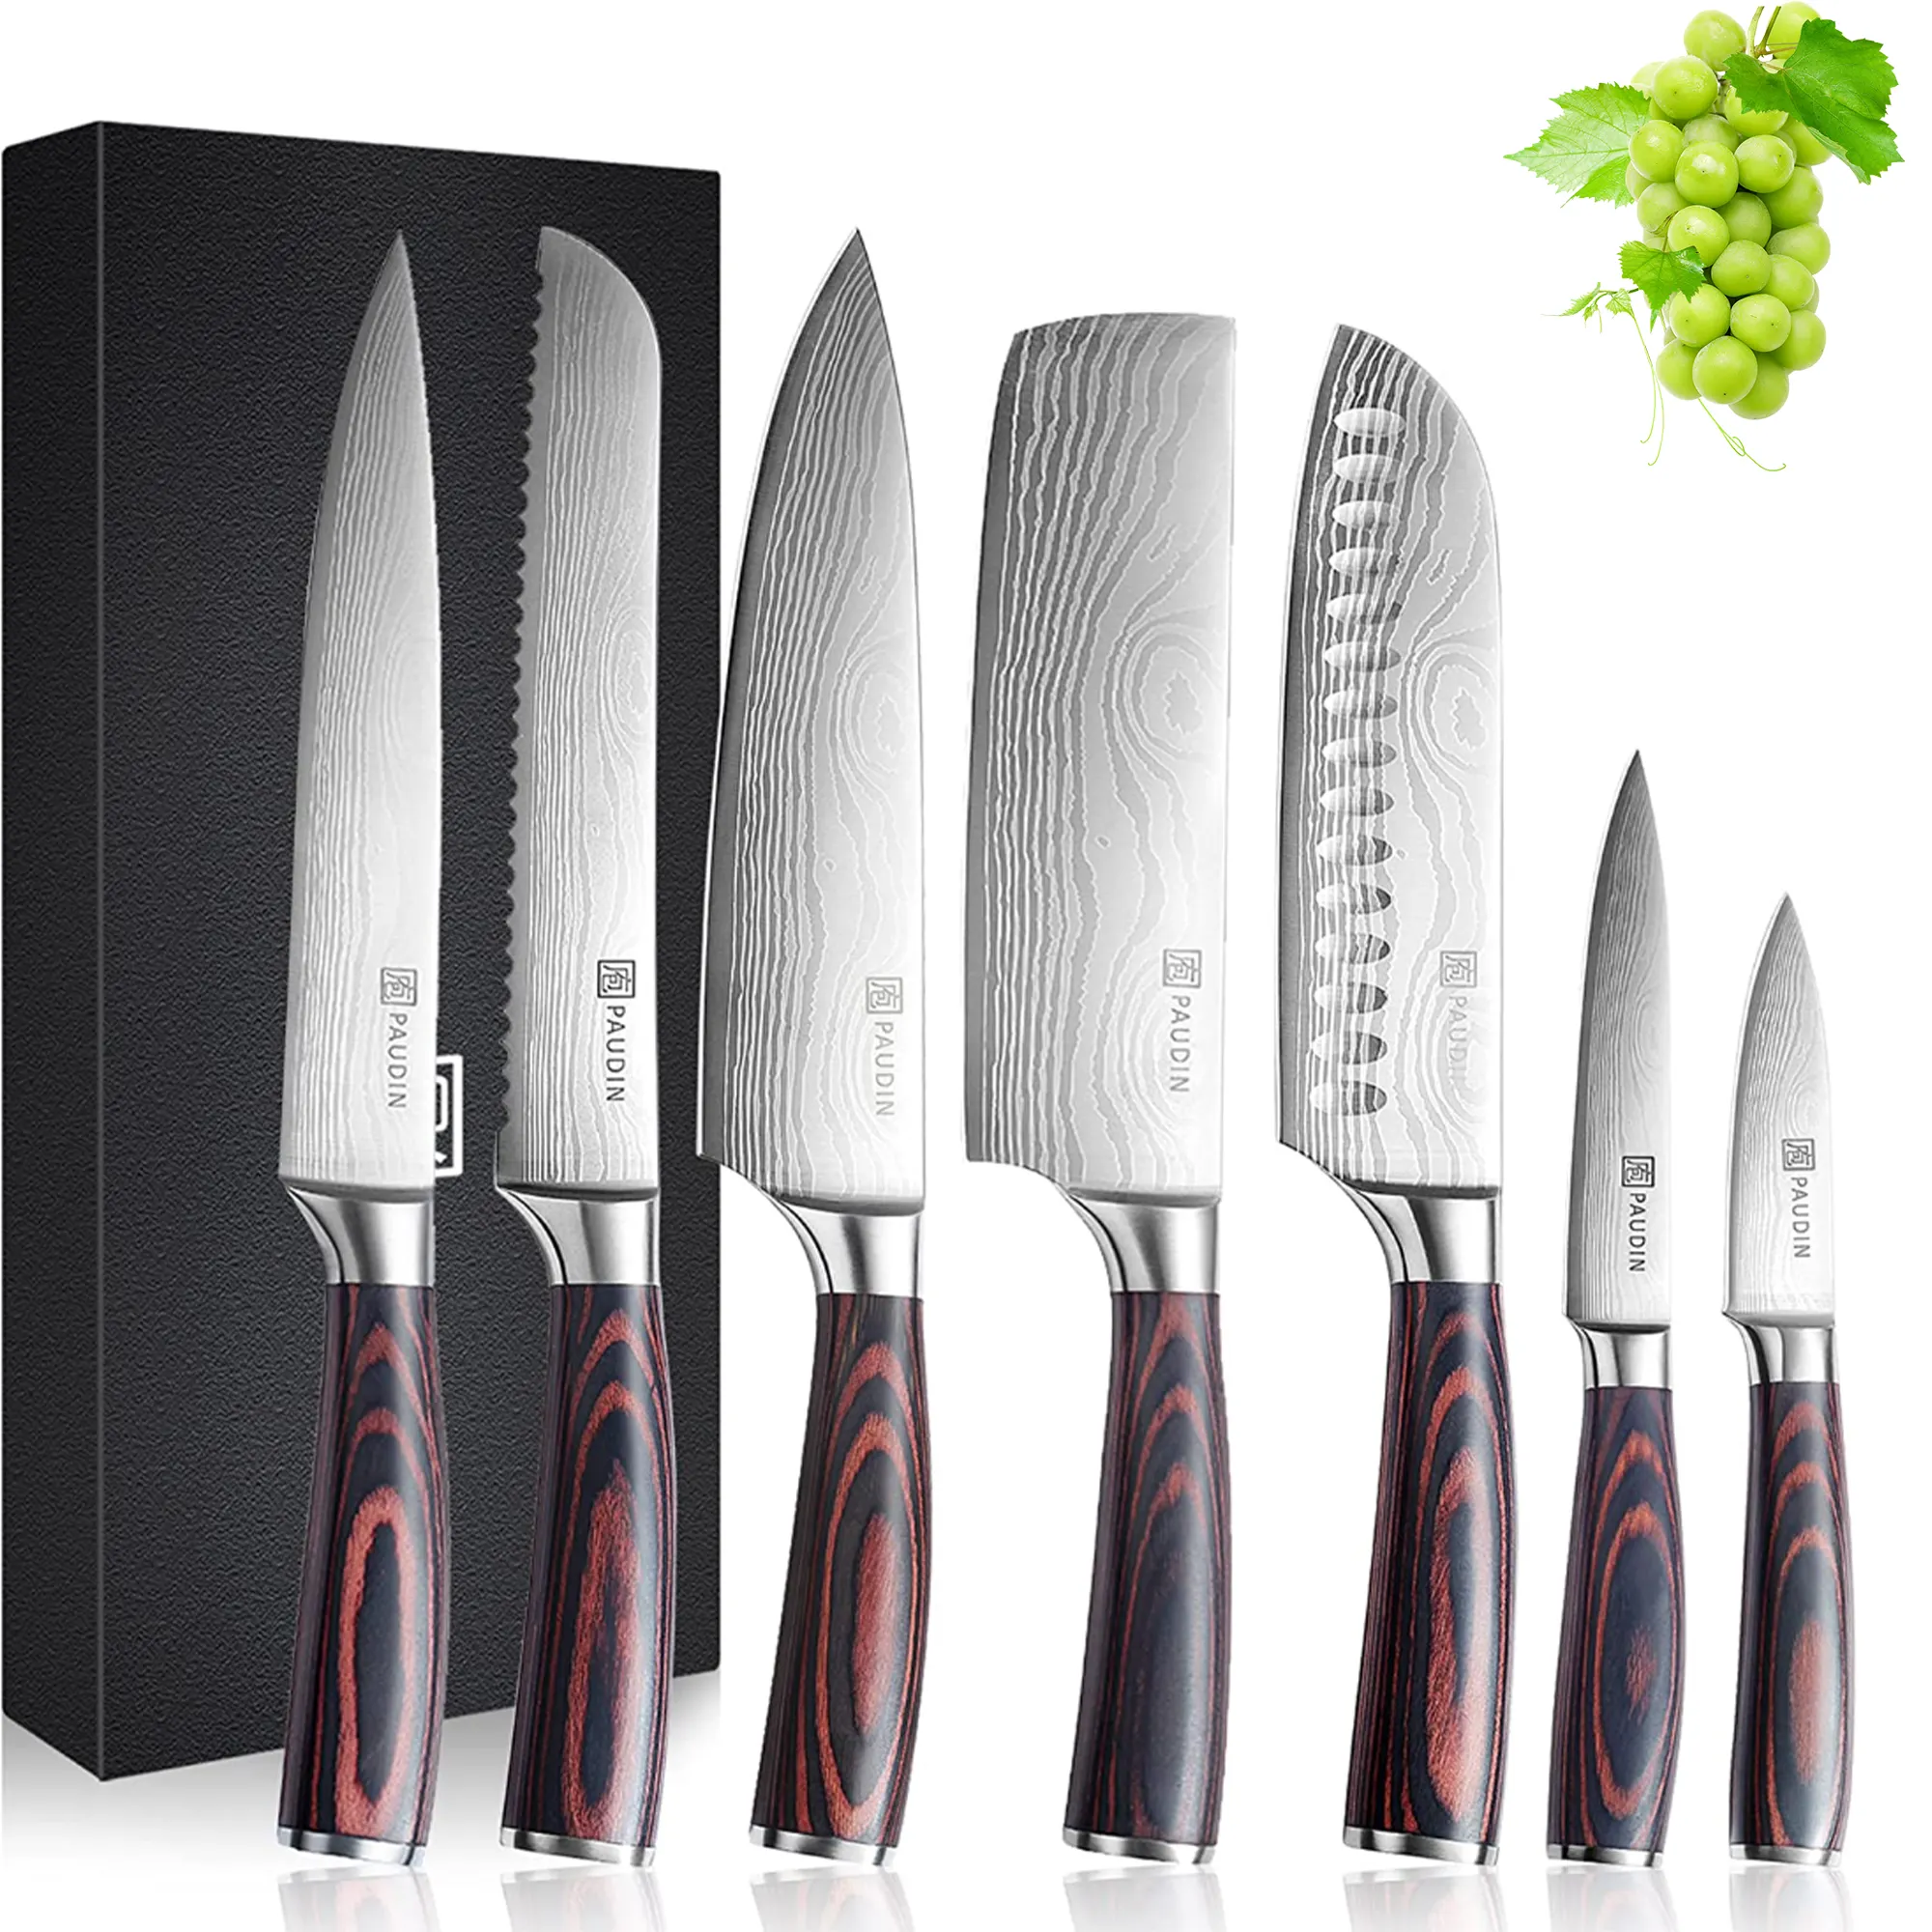 כניסות חדשות 7PCS כלי מטבח סכין סט עם אולטרה שארפ להב עץ ידית כלי בישול סכין סט עם אריזת מתנה